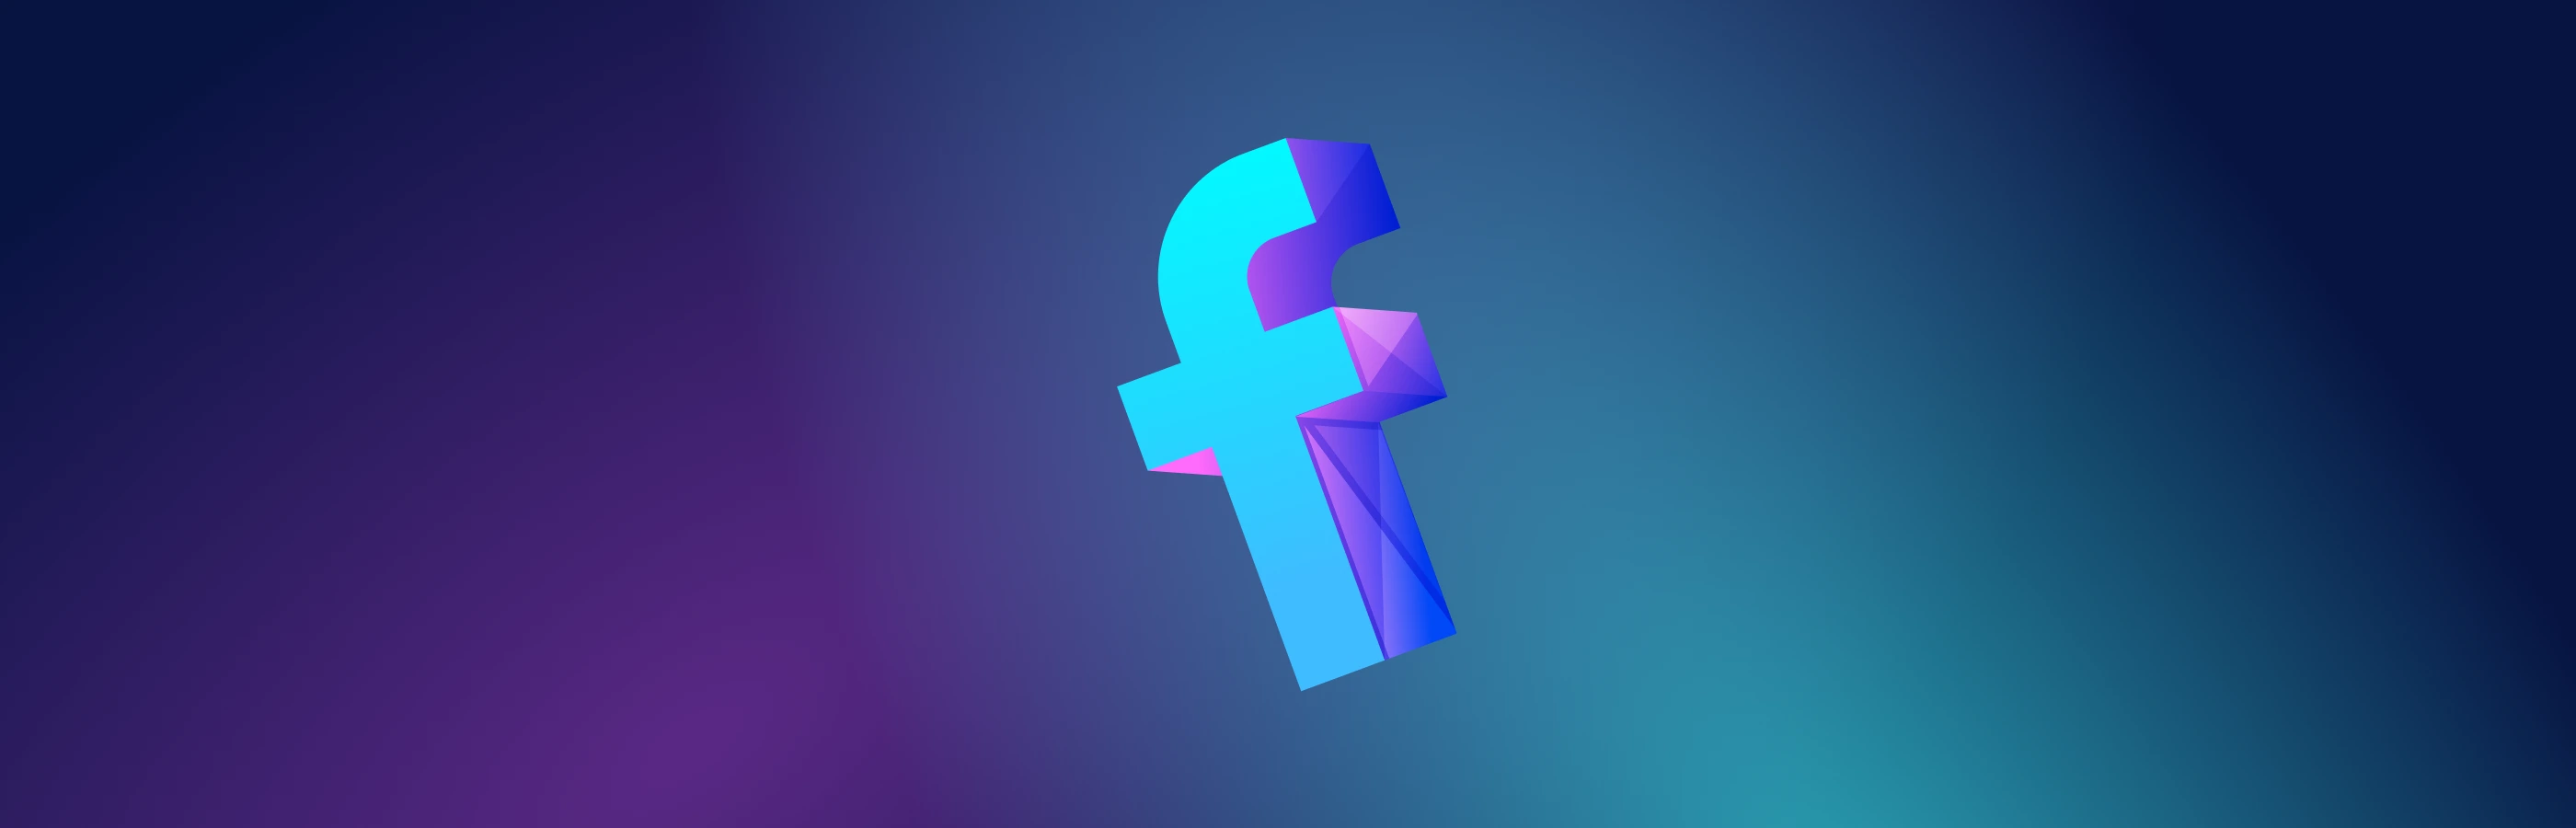 Mục tiêu và mẹo về việc nuôi tài khoản Facebook: chuẩn bị và chiến lược